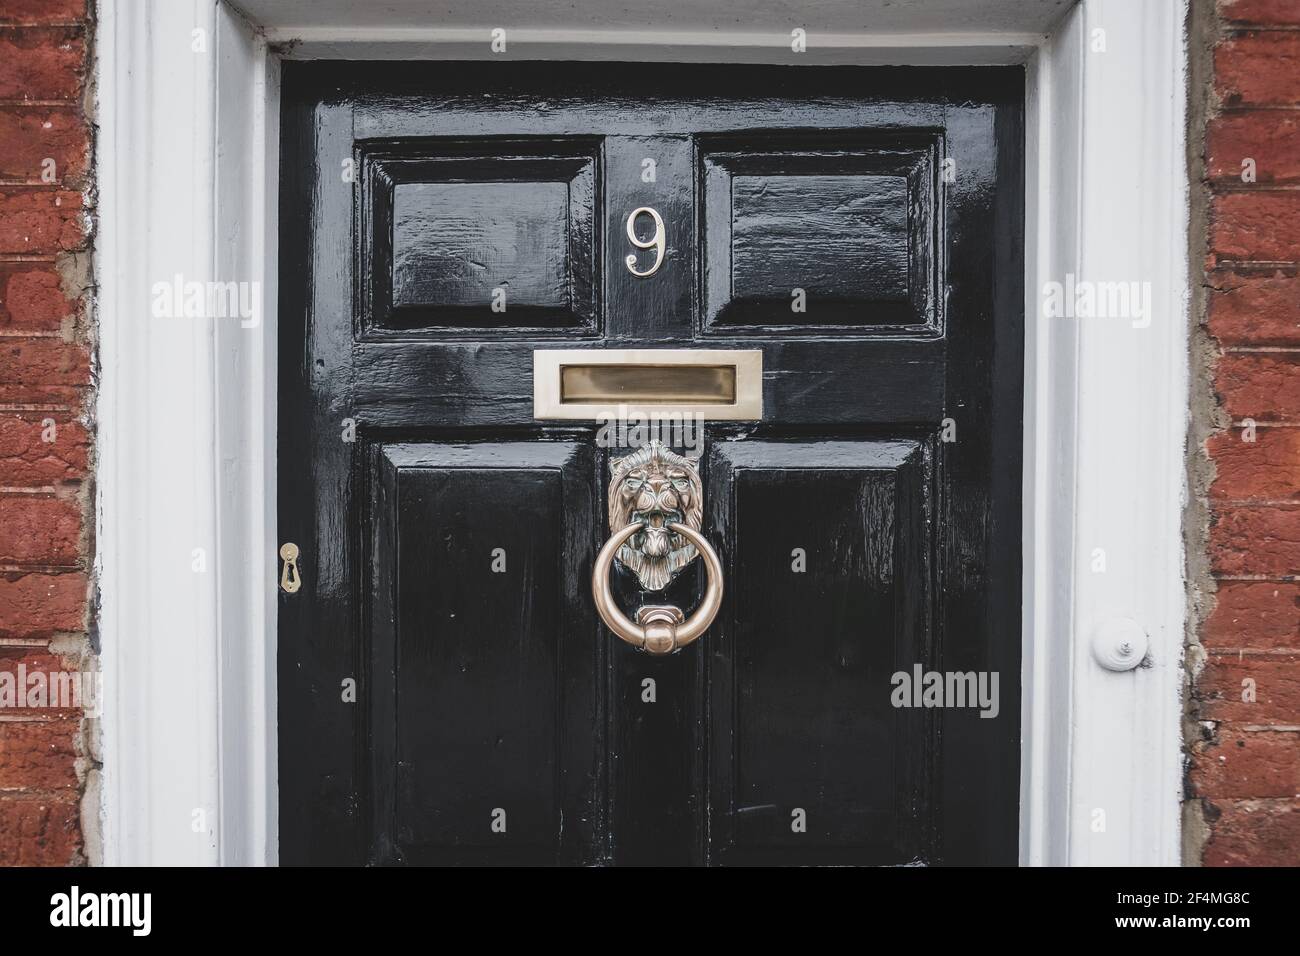 Antica porta in legno ornata vista all'ingresso di una casa. Le caratteristiche in ottone e un battitalcagno ornato sono chiaramente visibili insieme alla vernice lucida. Foto Stock